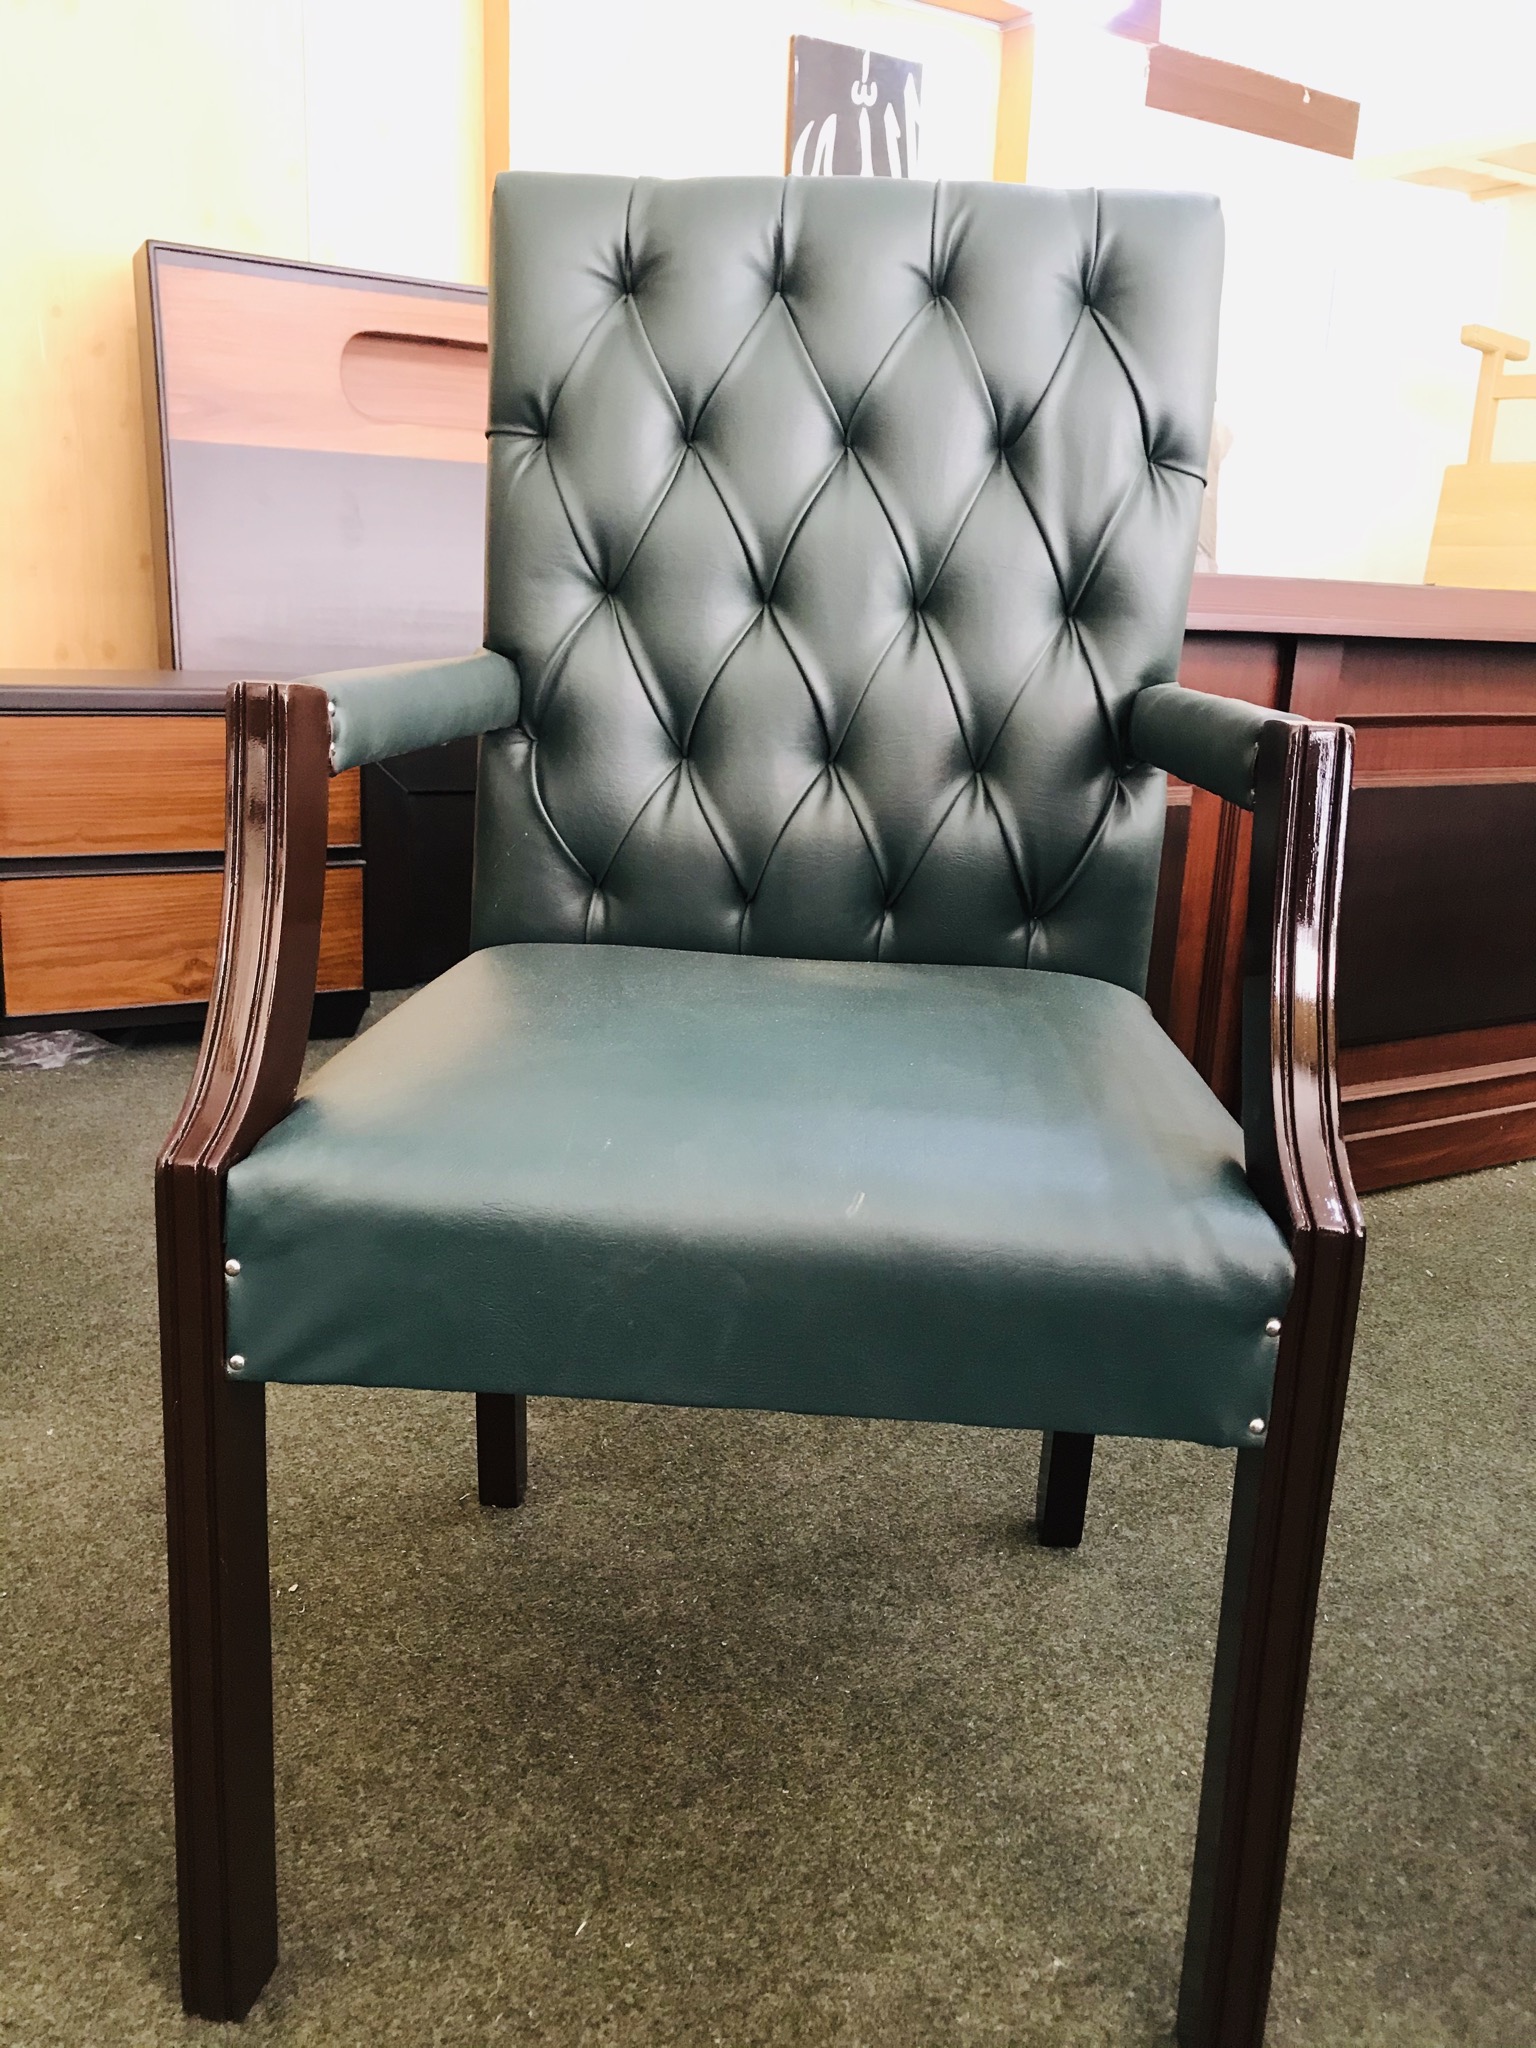 Chair Set with Unique design